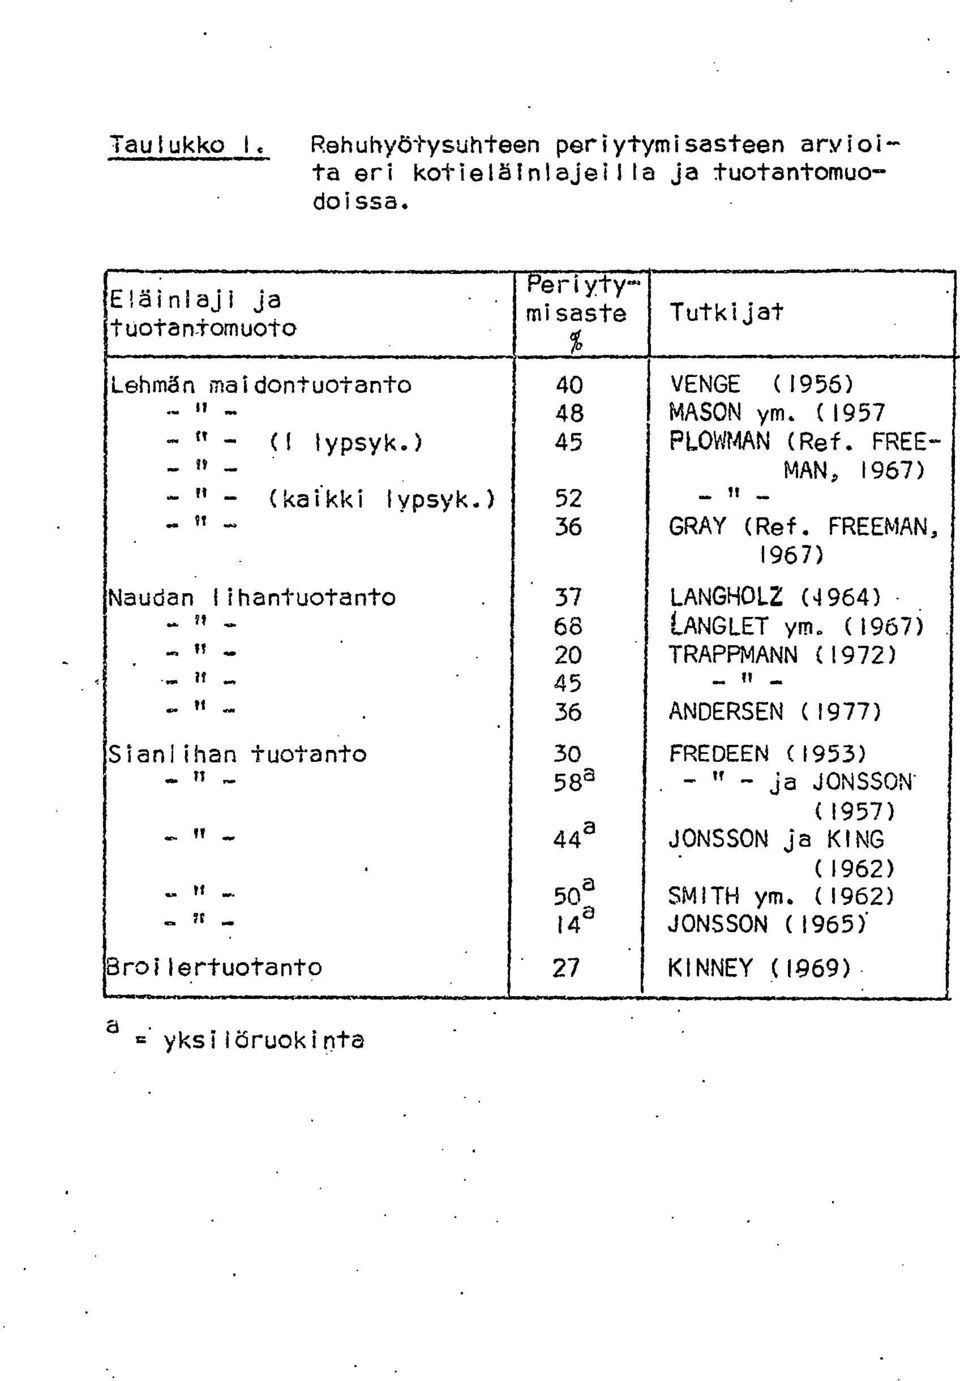 FREE- _ 1, _ MAN, 1967) - " - (kaikki lypsyk.) 52 _ It _ 36 GRAY (Ref. FREEMAN, 1967) Naudan lihantuotanto. 37 LANGH012 (4964) _?? _ 68 LANGLET ym. (1967)... II.